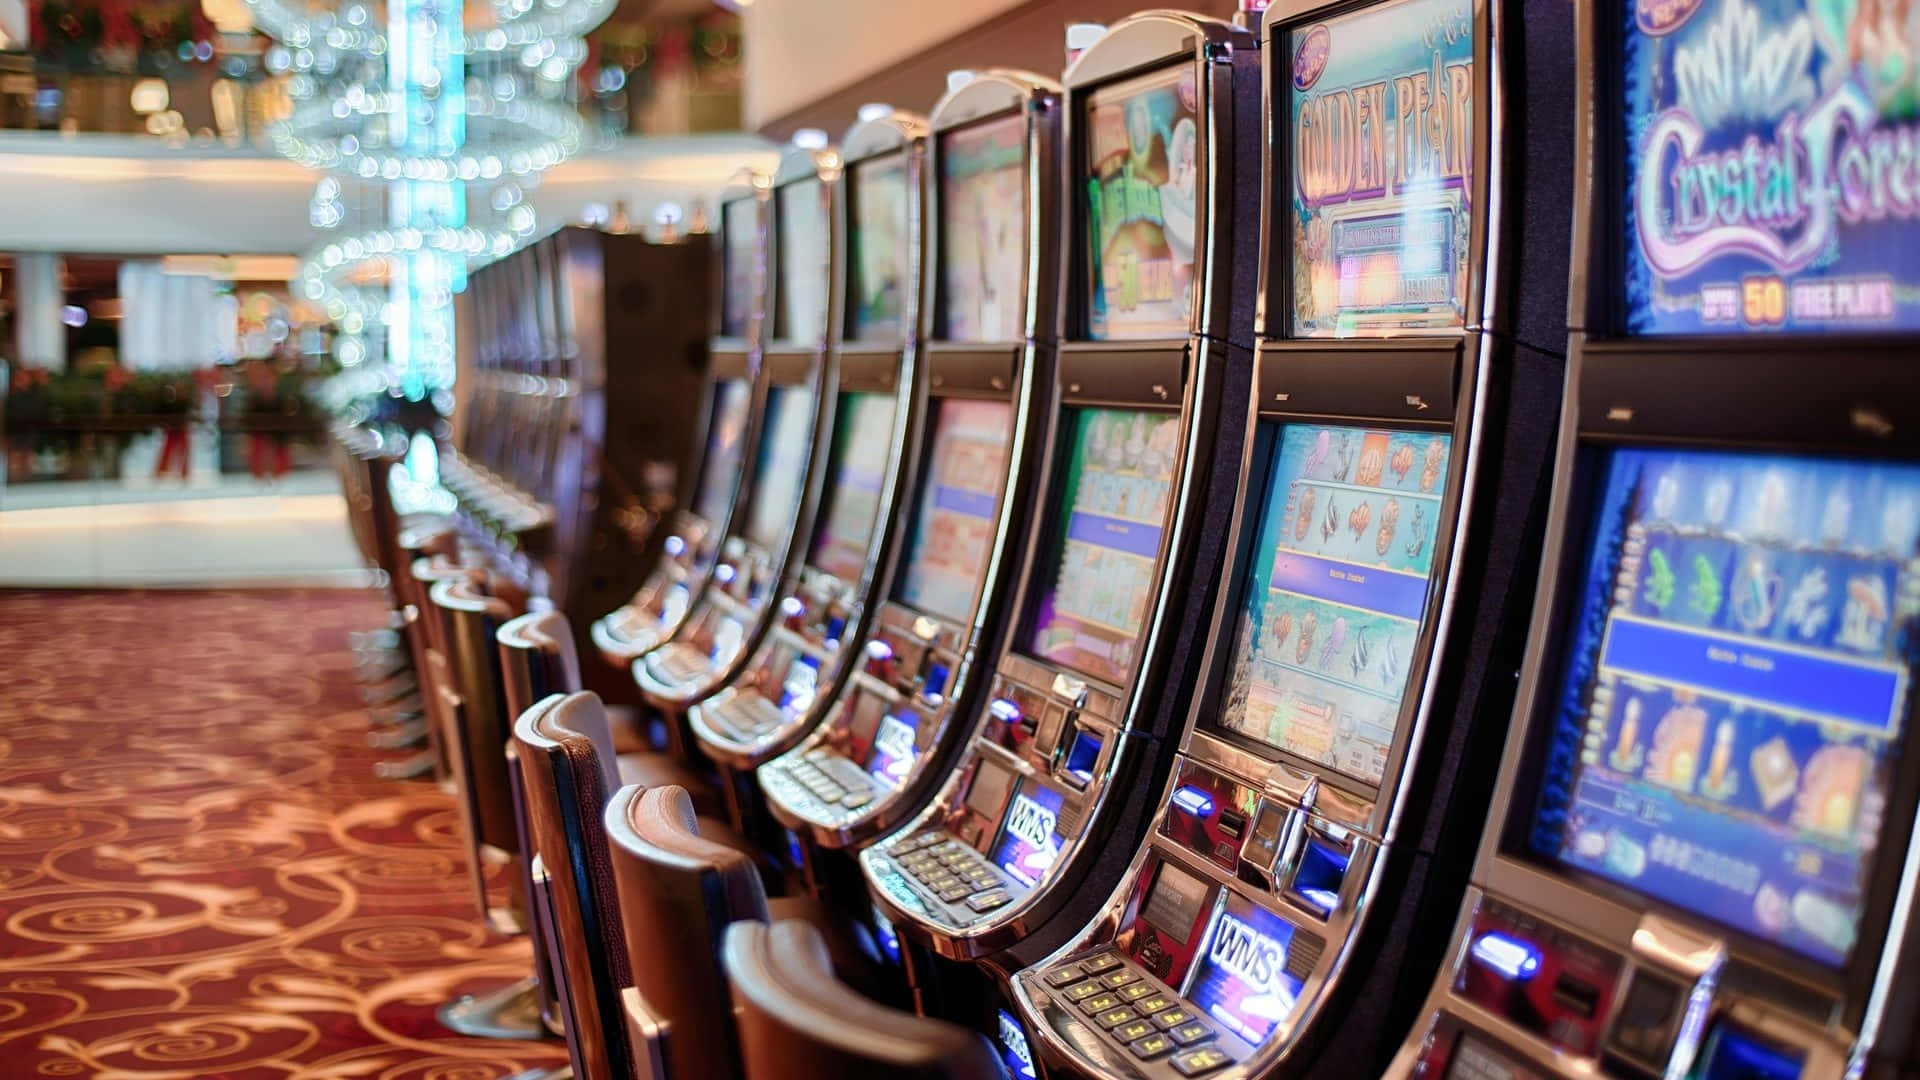 "Vibrant Casino Slot Machines"